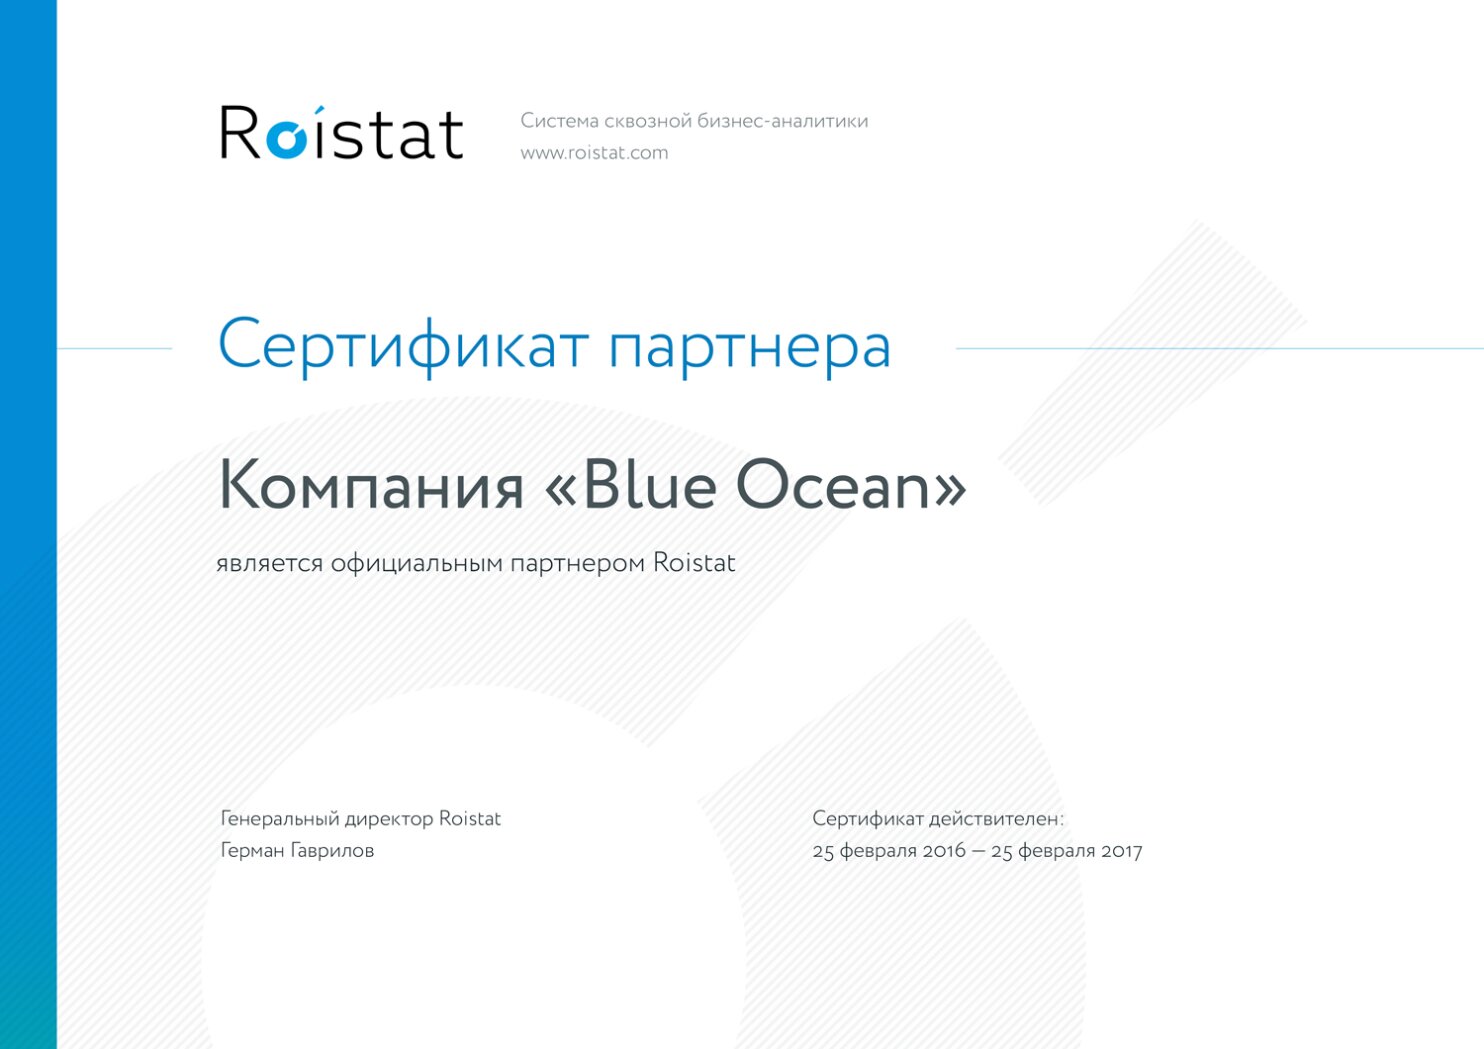 Сертифицированный партнер Roistat